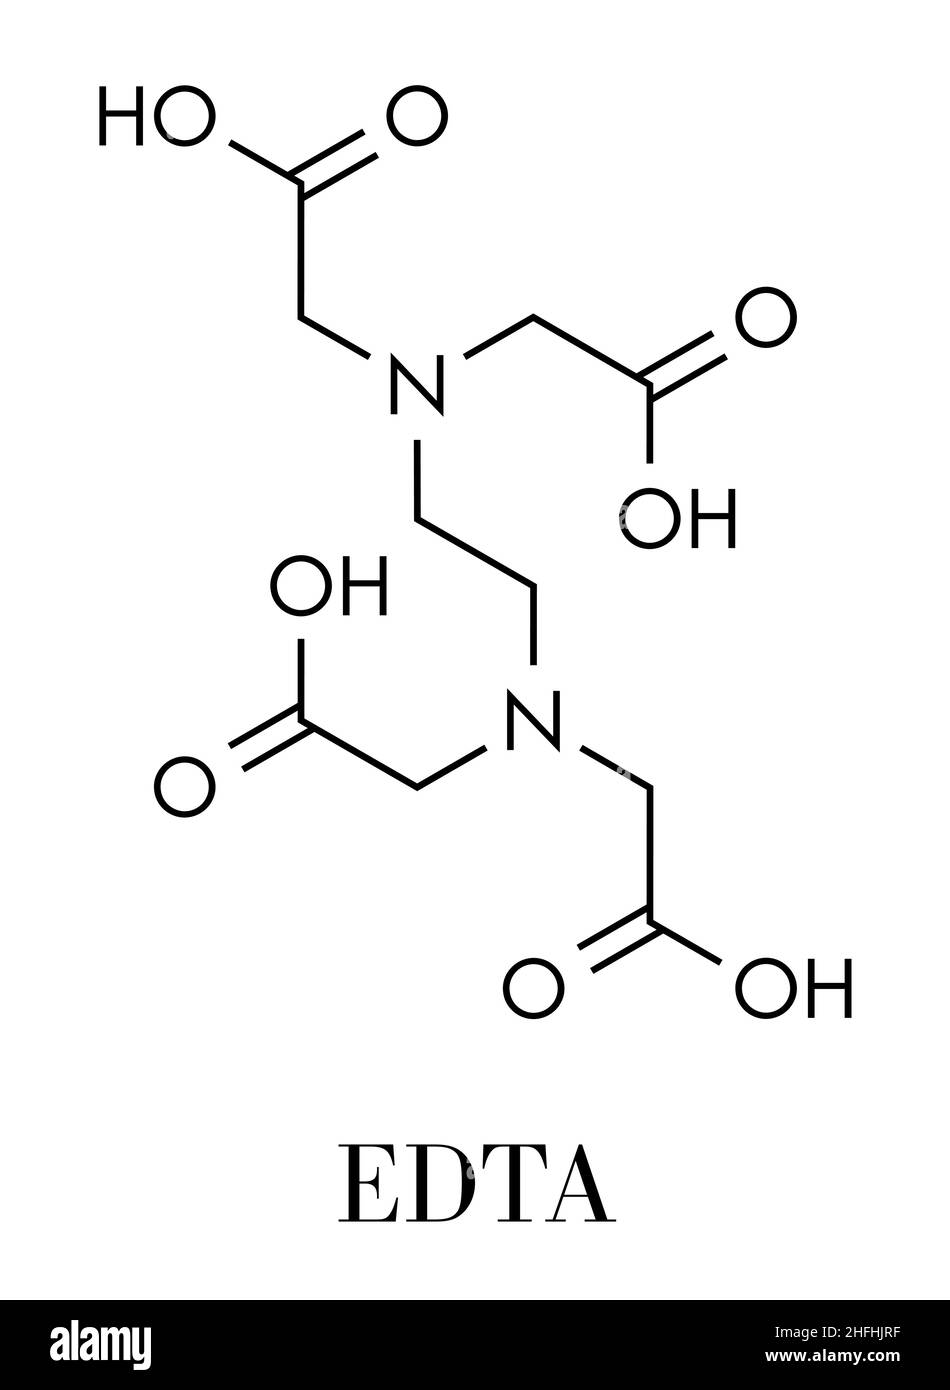 Molécule de médicament édétate (EDTA).Utilisé médicalement dans le traitement par chélation pour traiter l'empoisonnement par les métaux (mercure, plomb).Formule squelettique. Illustration de Vecteur